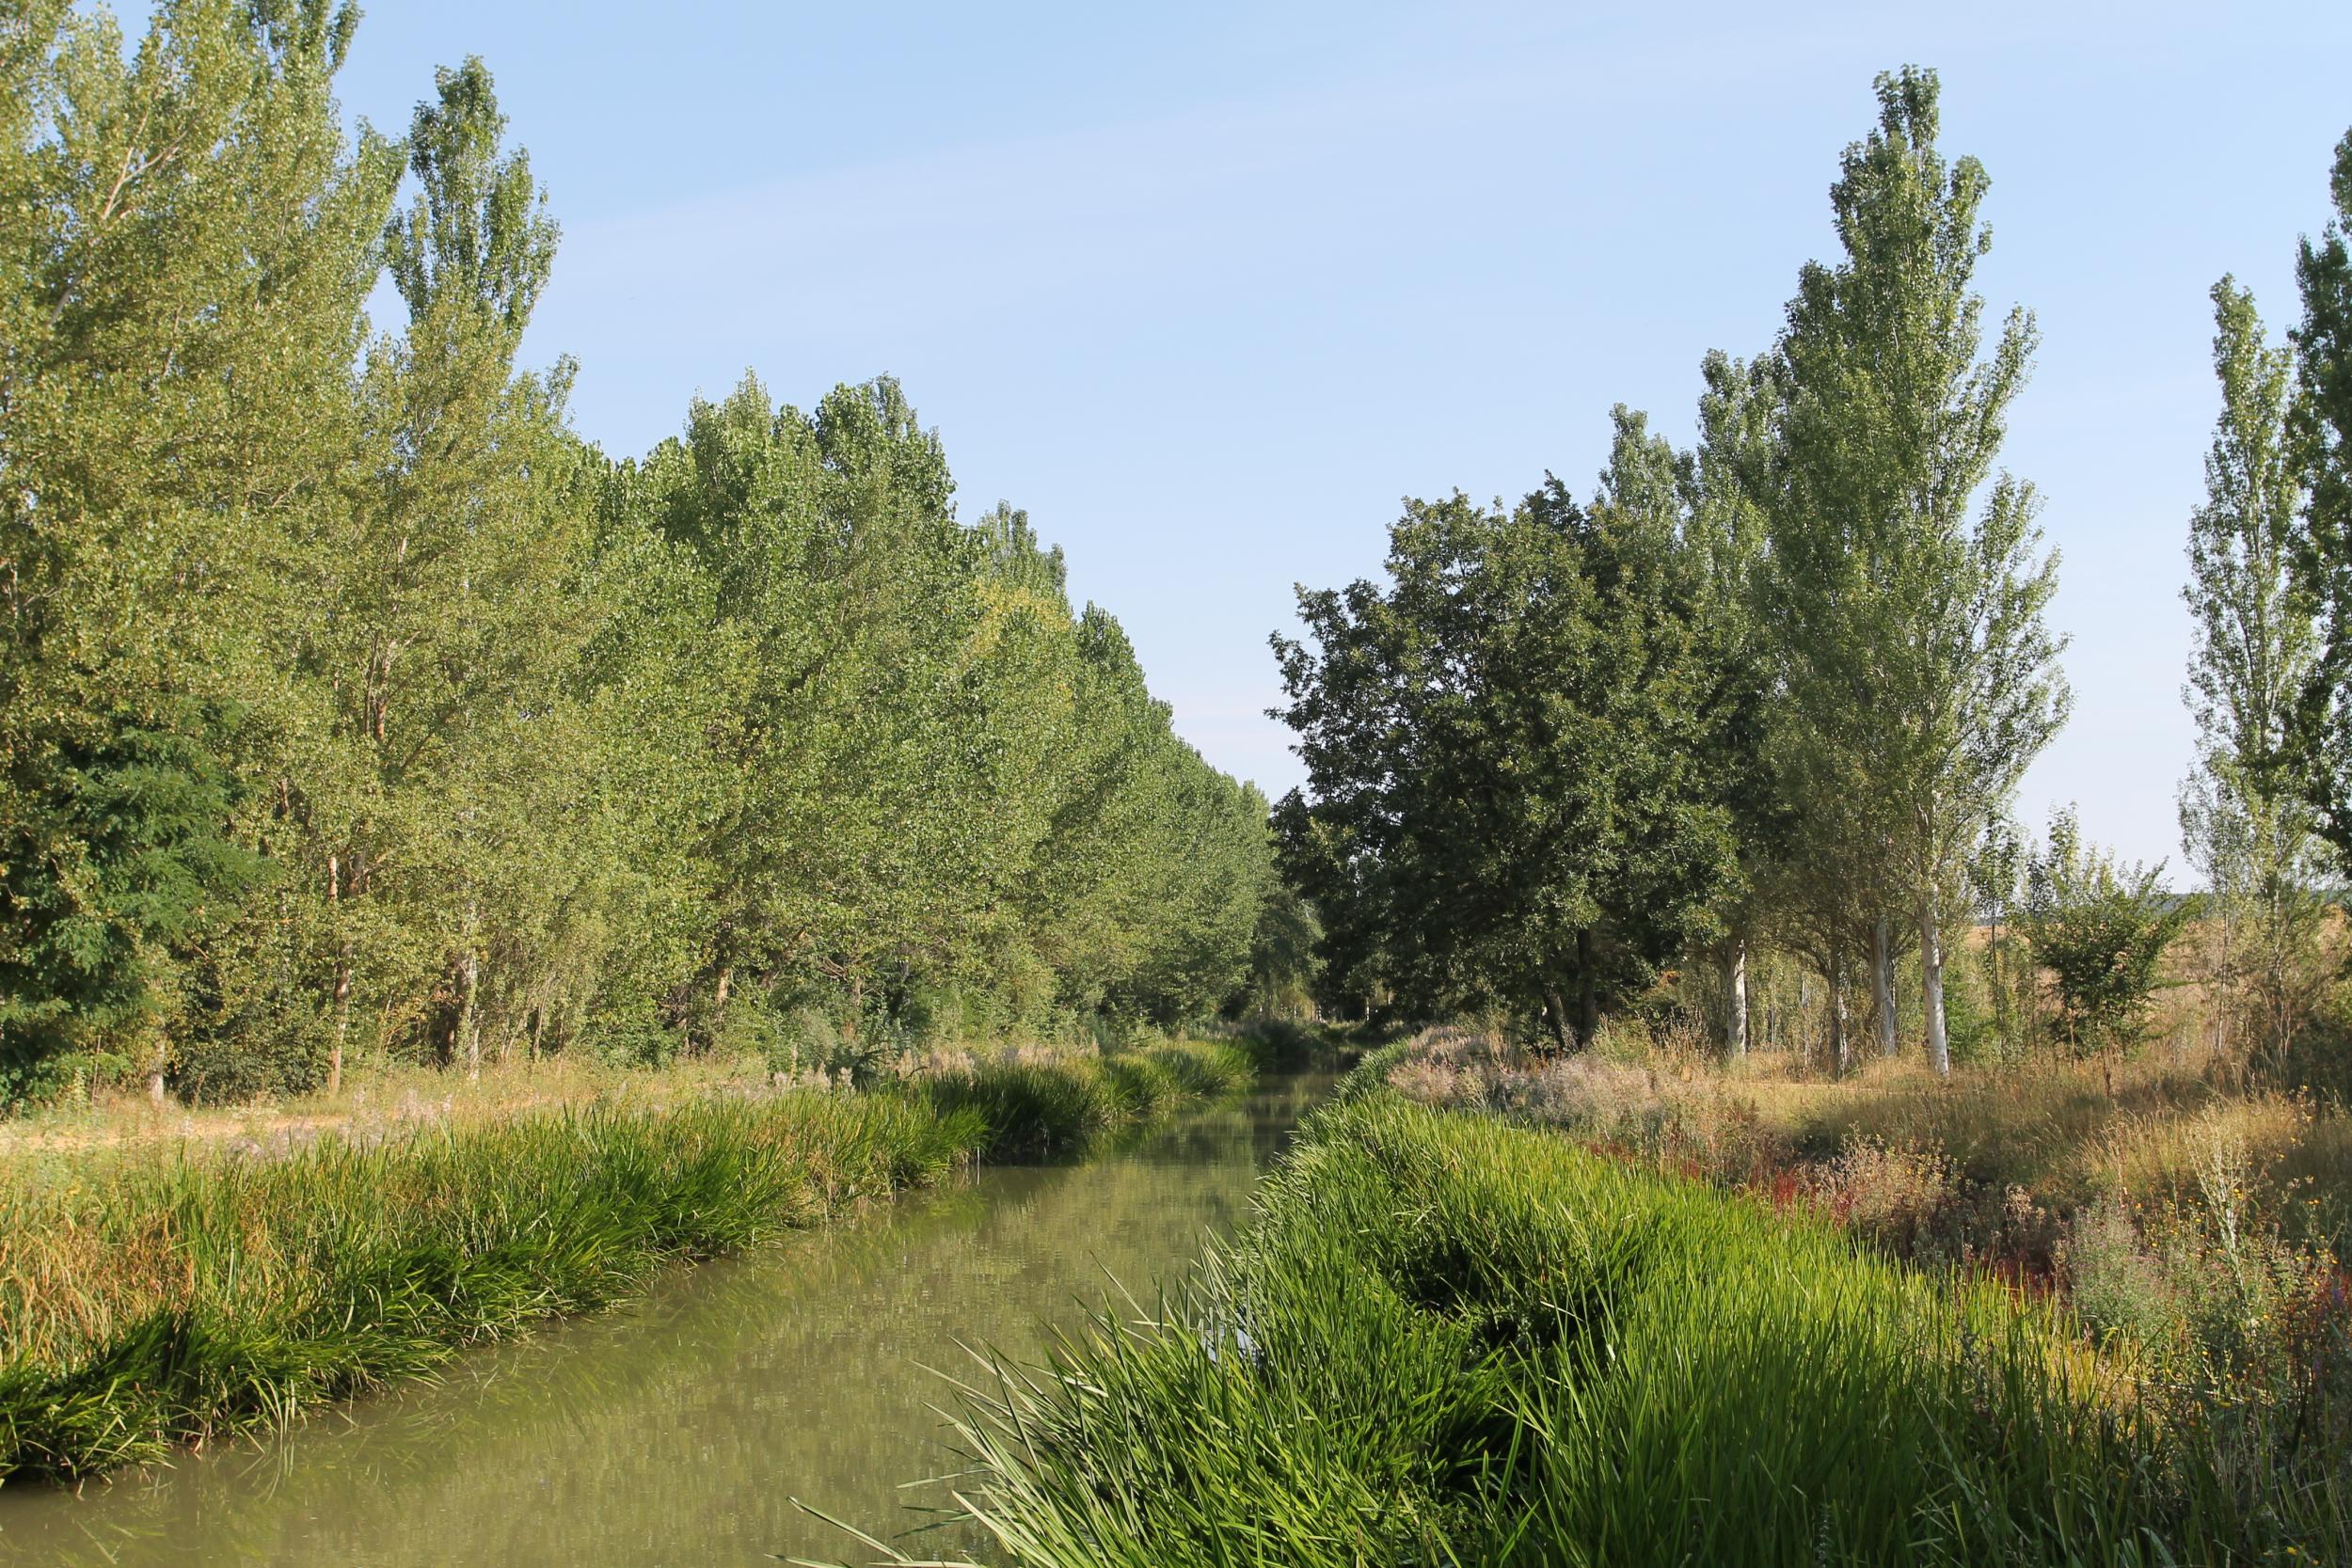 Esclusa 3 Canal de Castilla